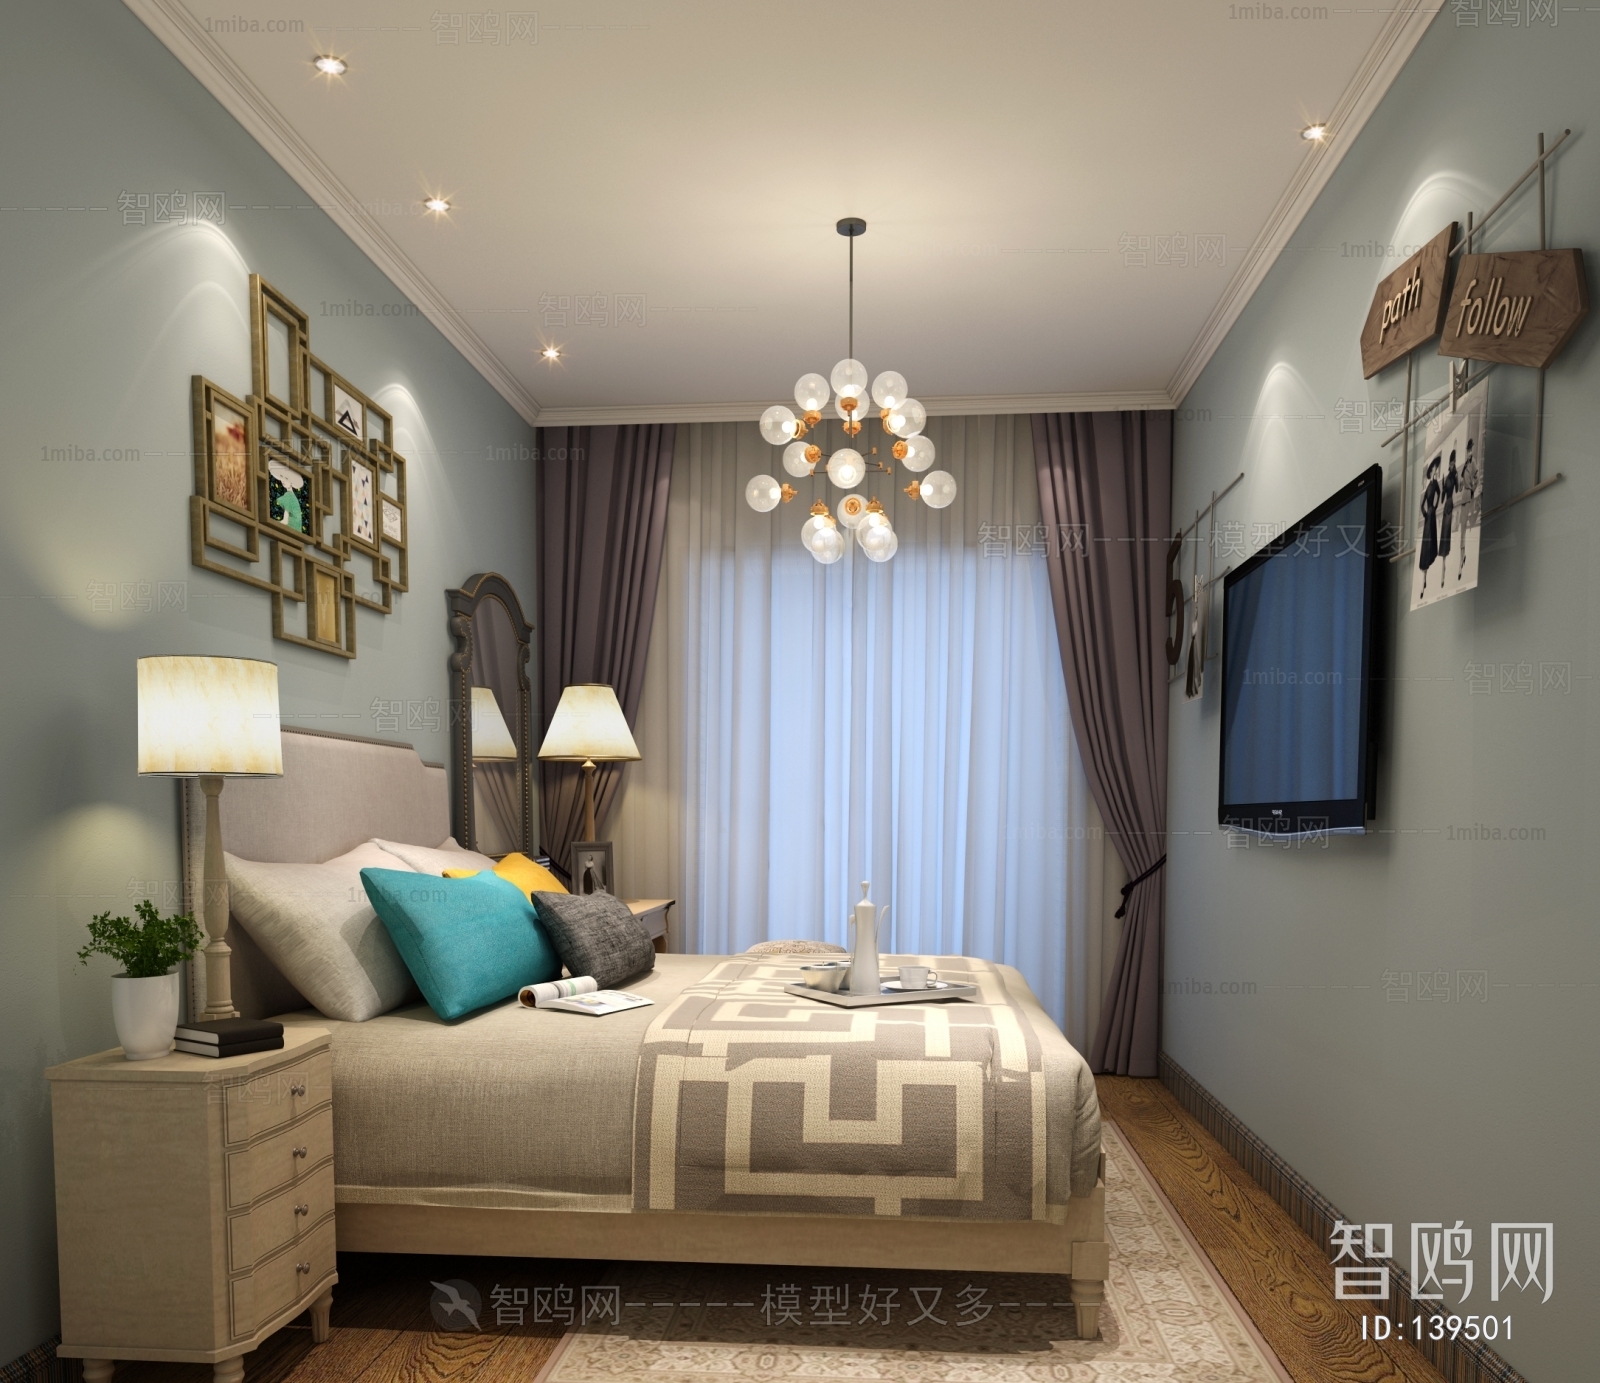 Modern Idyllic Style Bedroom